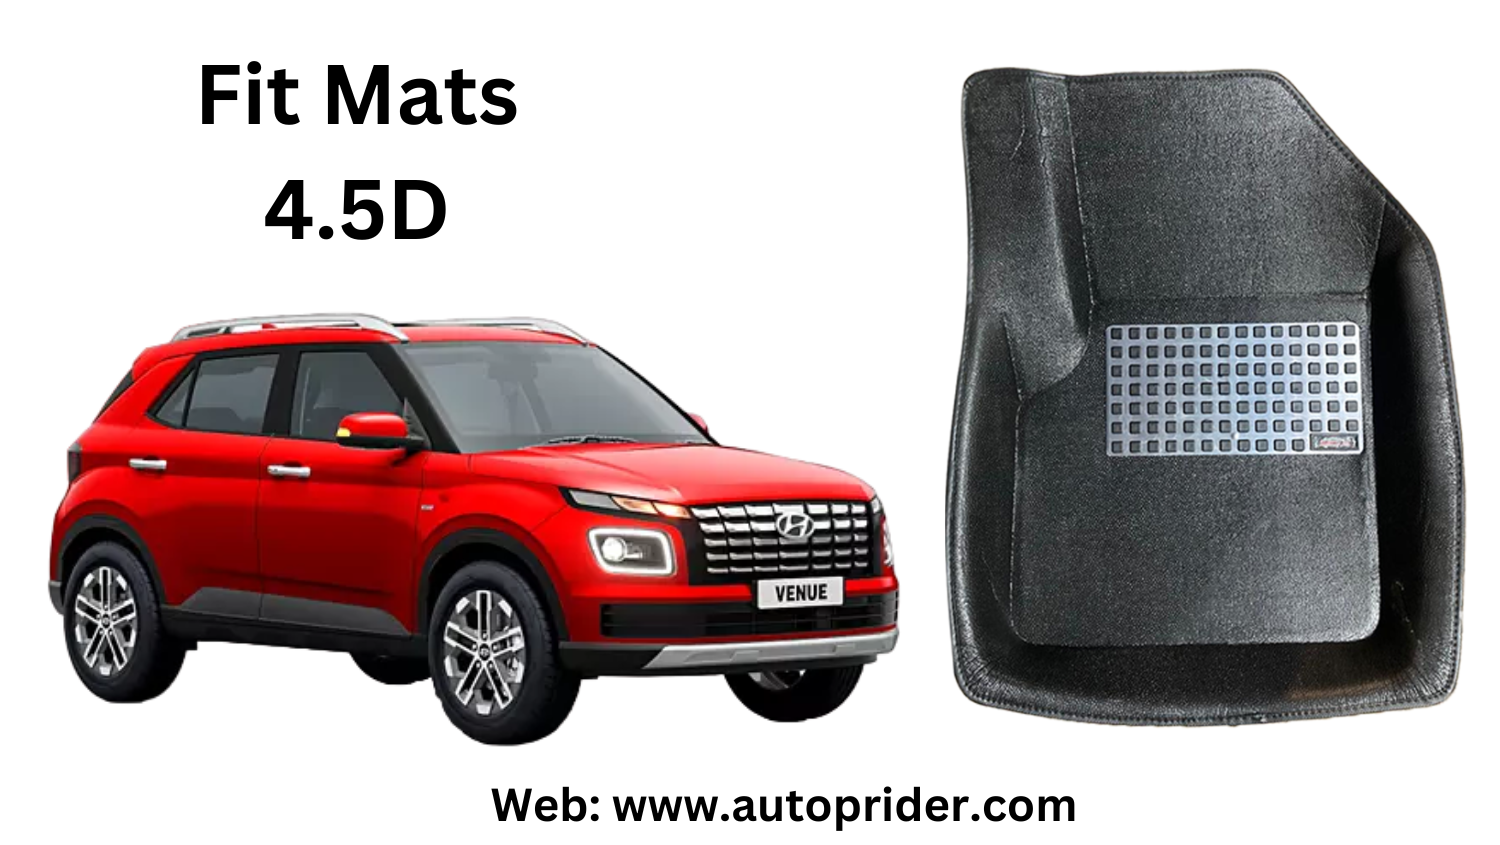 Autoprider | Fit Mats 4.5D Economy Car Mats for Hyundai Venue